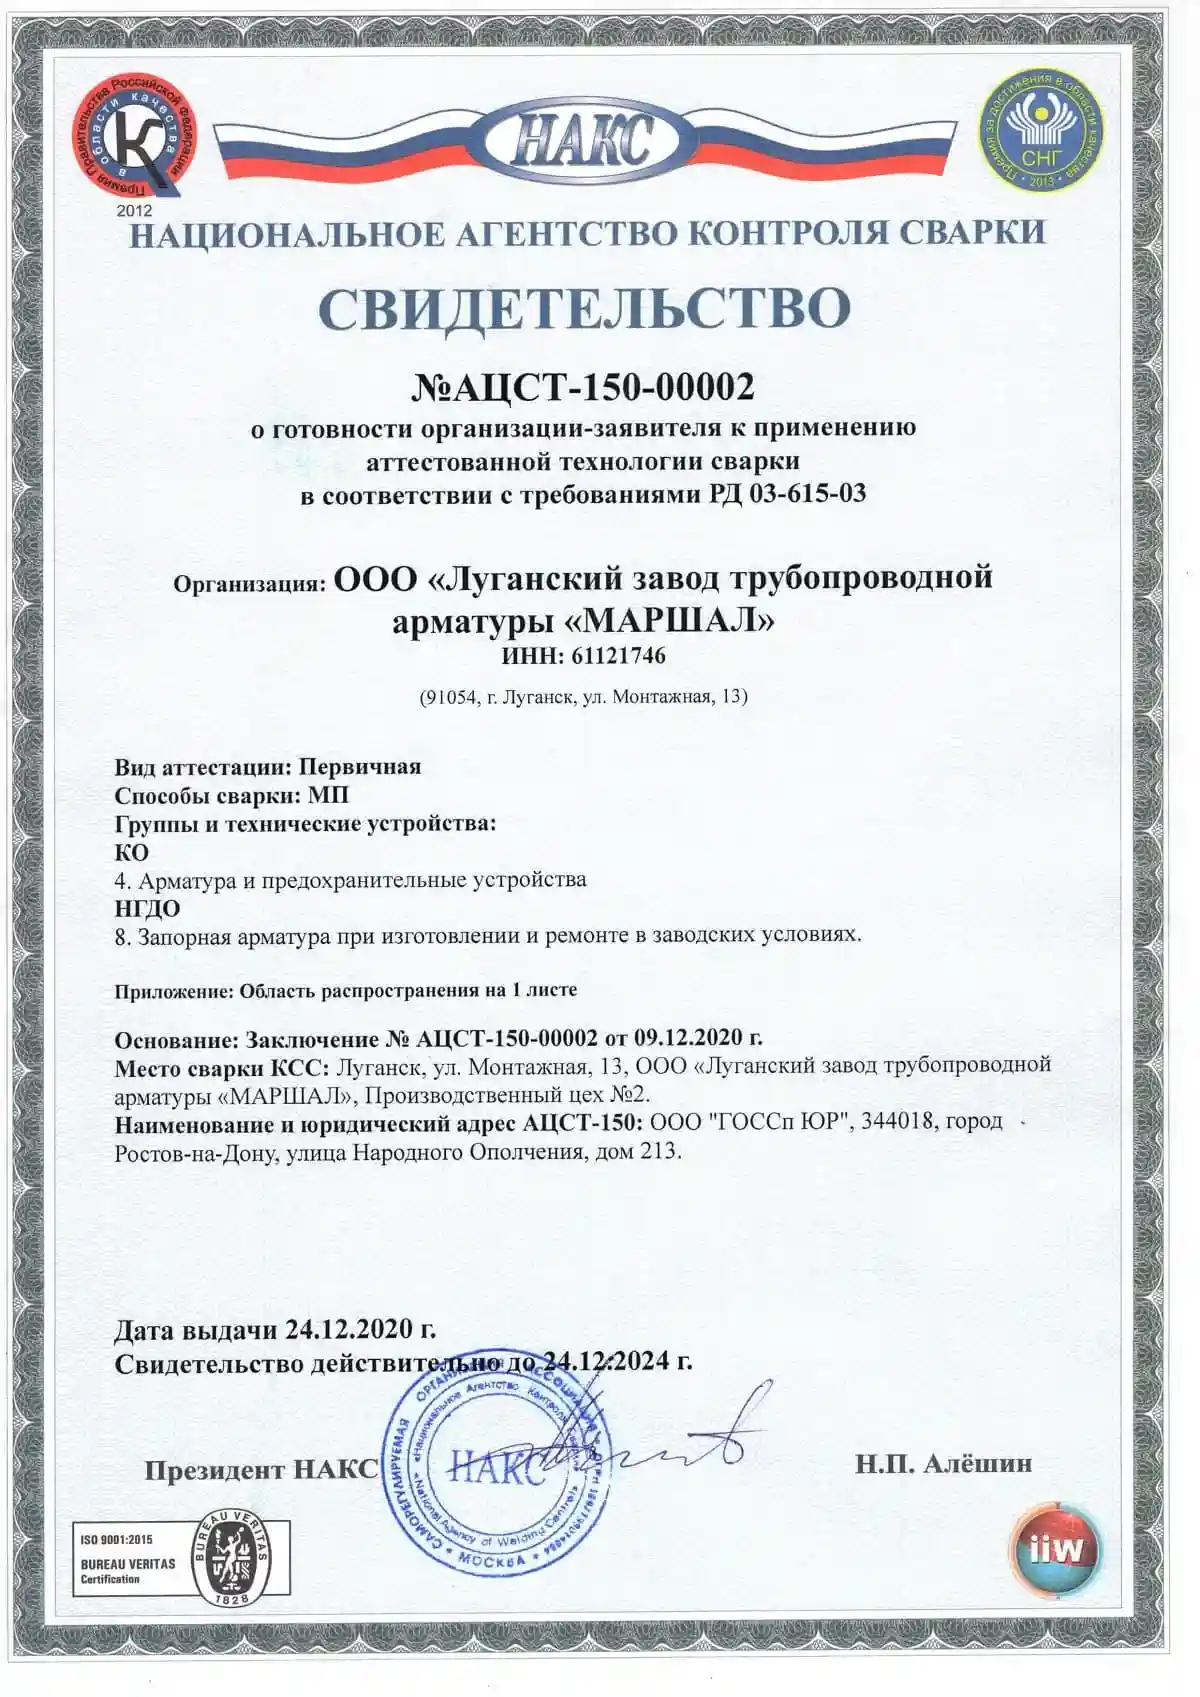 Сертификат Национального агентства сварки АЦСТ-150-00002 о соответствии требованиям РД 03-615-03